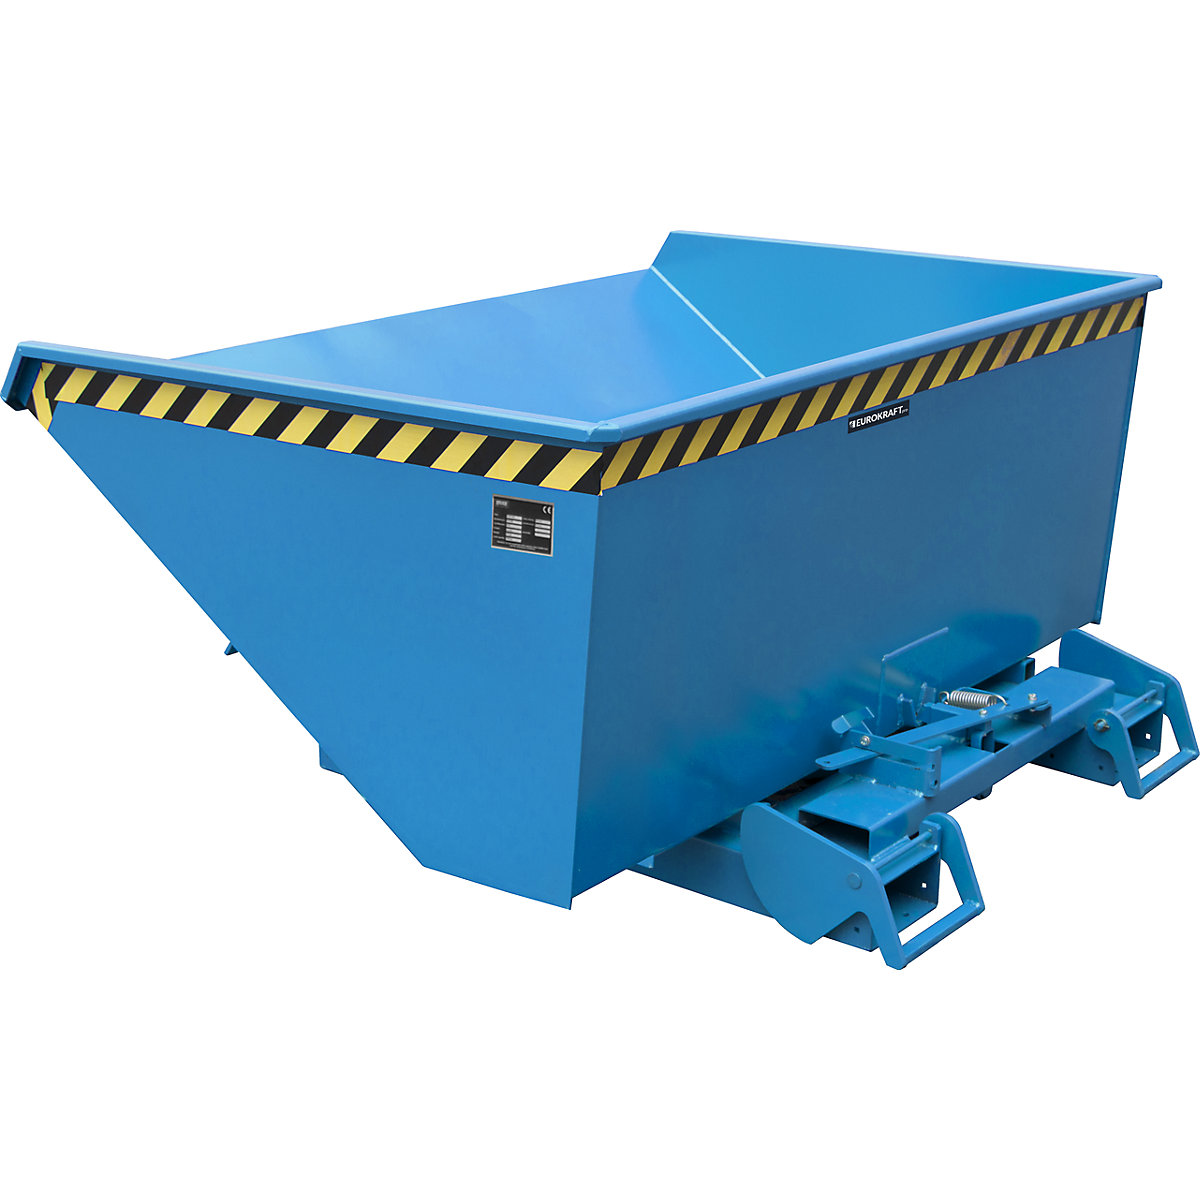 EUROKRAFTpro – Volquete automático, capacidad 0,9 m³, azul RAL 5012